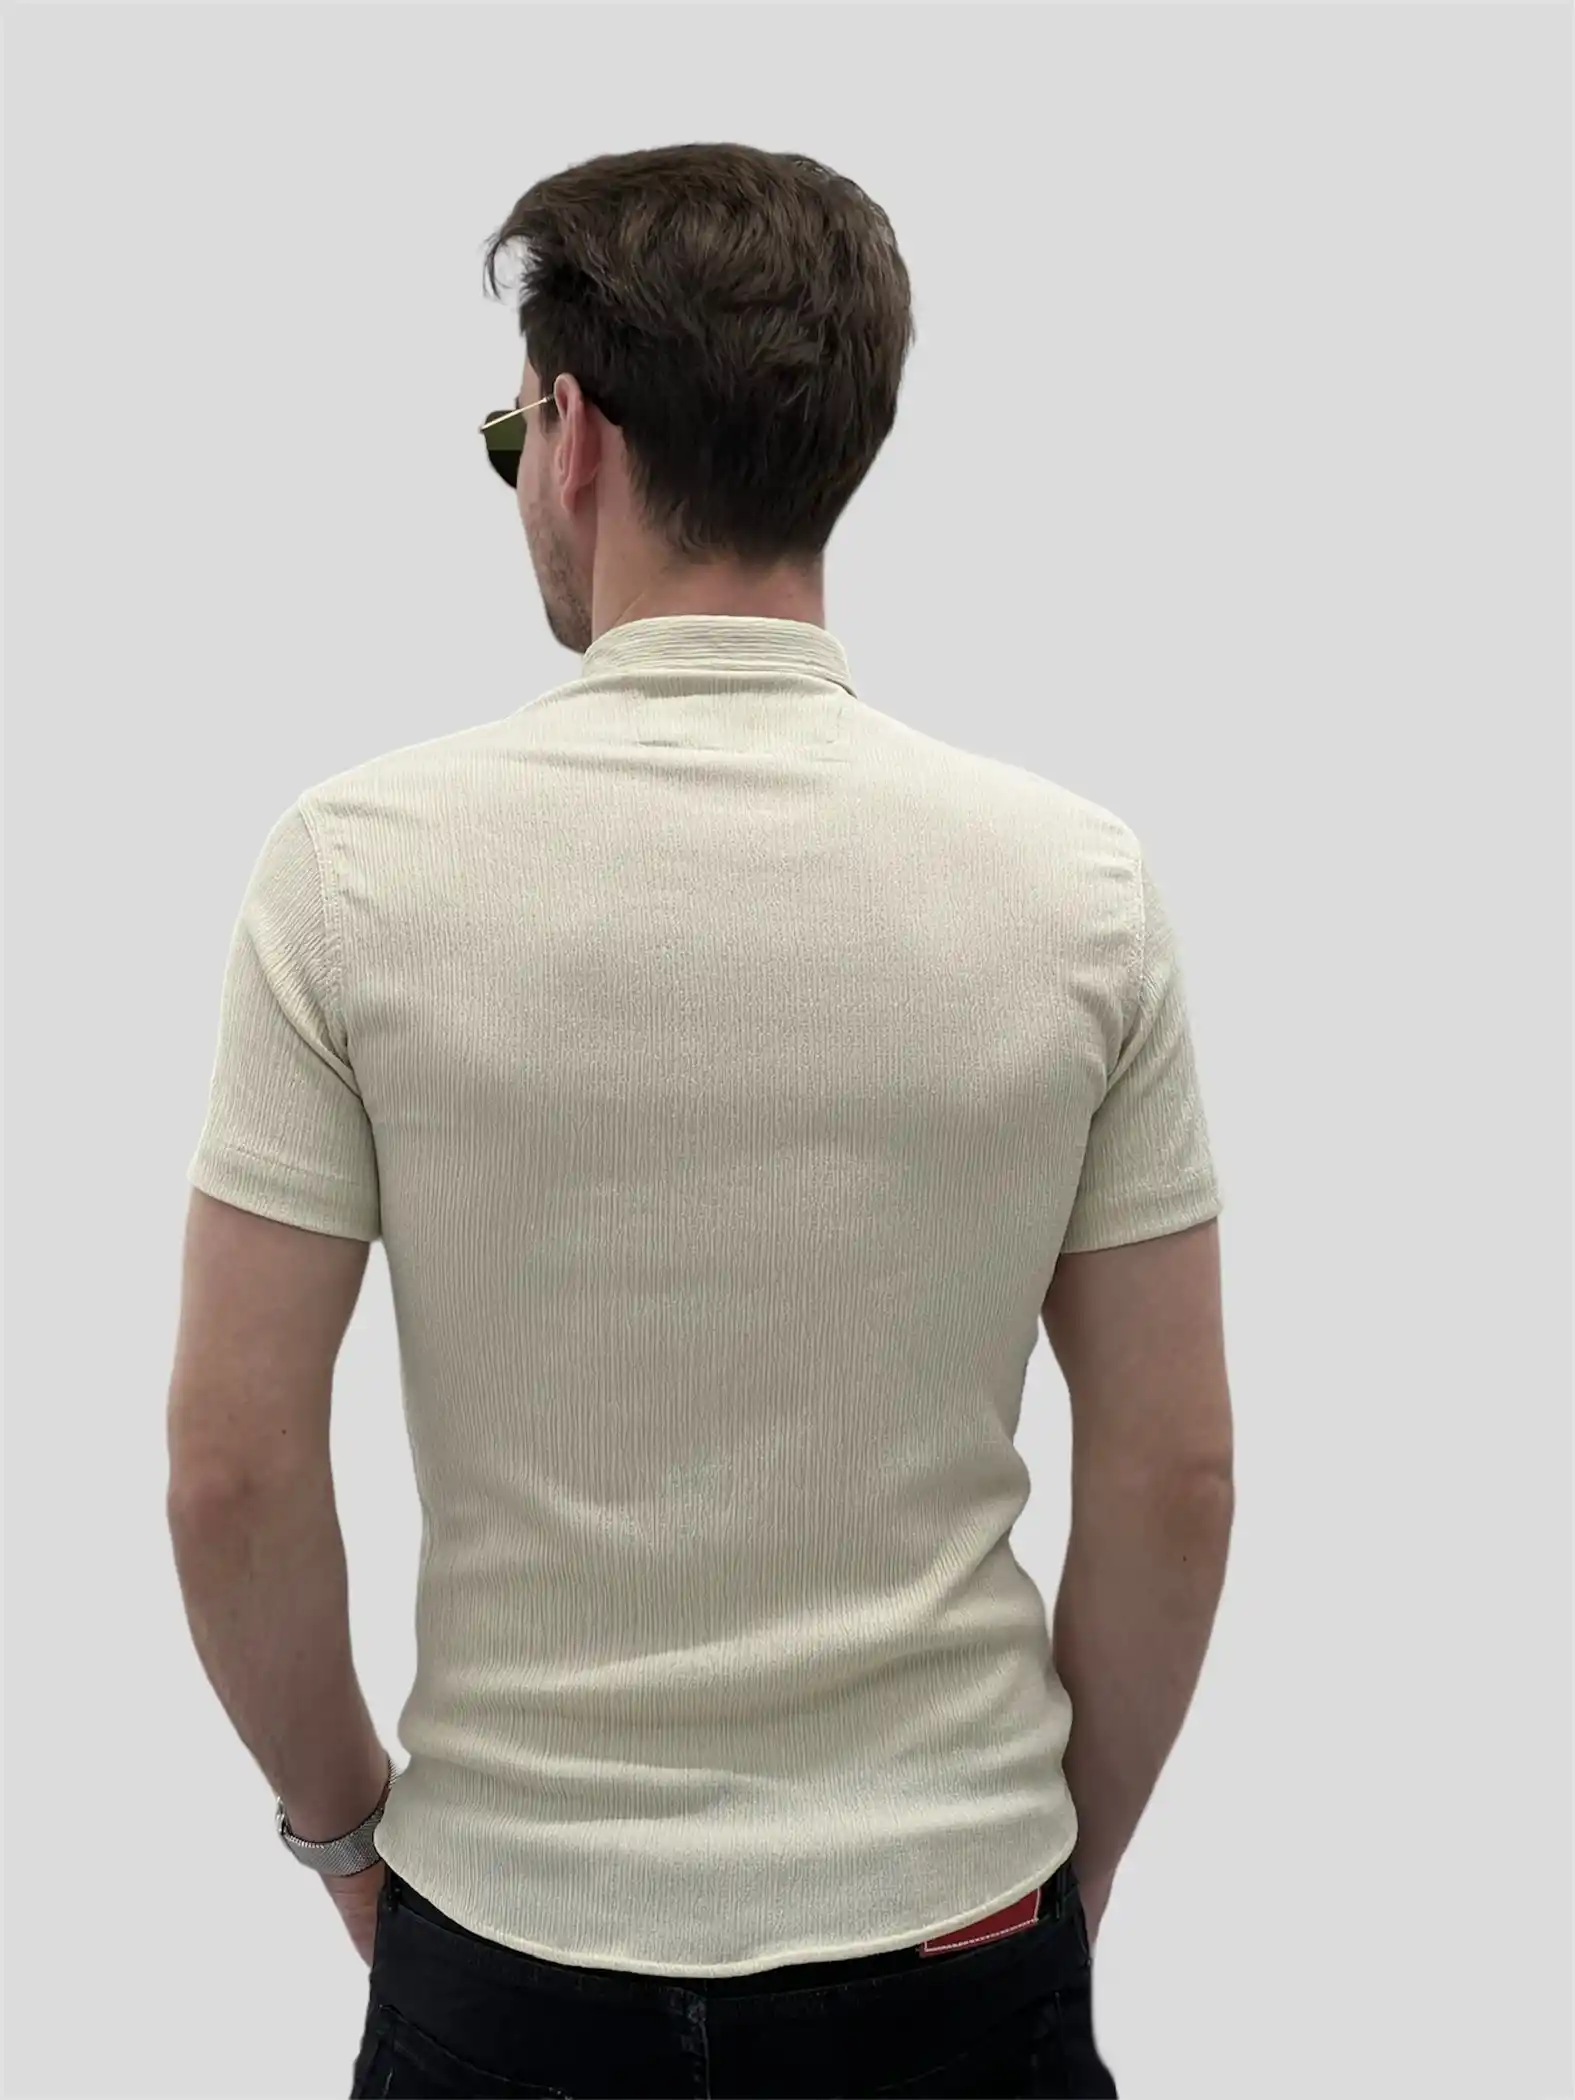 Αντρικό πουκάμισο κανονική γραμμή κοντομάνικο μπεζ